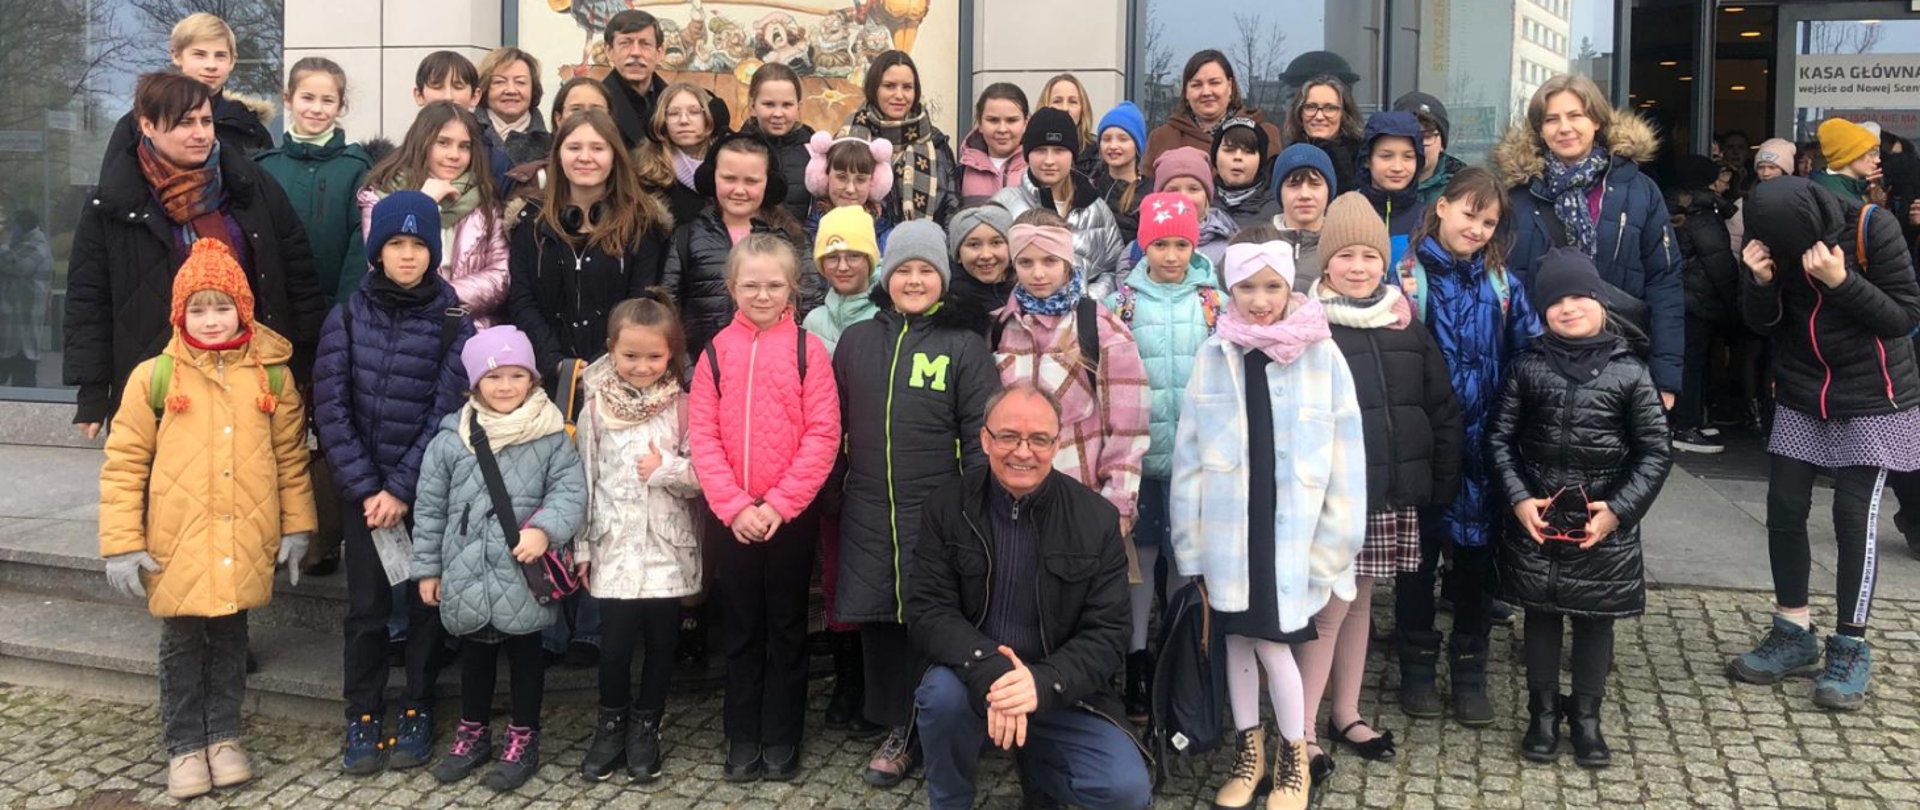 Na zdjęciu grupa uczniów wraz z opiekunami podczas szkolnej wycieczki. Wszyscy w kurtkach, niektórzy maja czapki. Zdjęcie wykonano przed Teatrem Muzycznym w Gdyni.